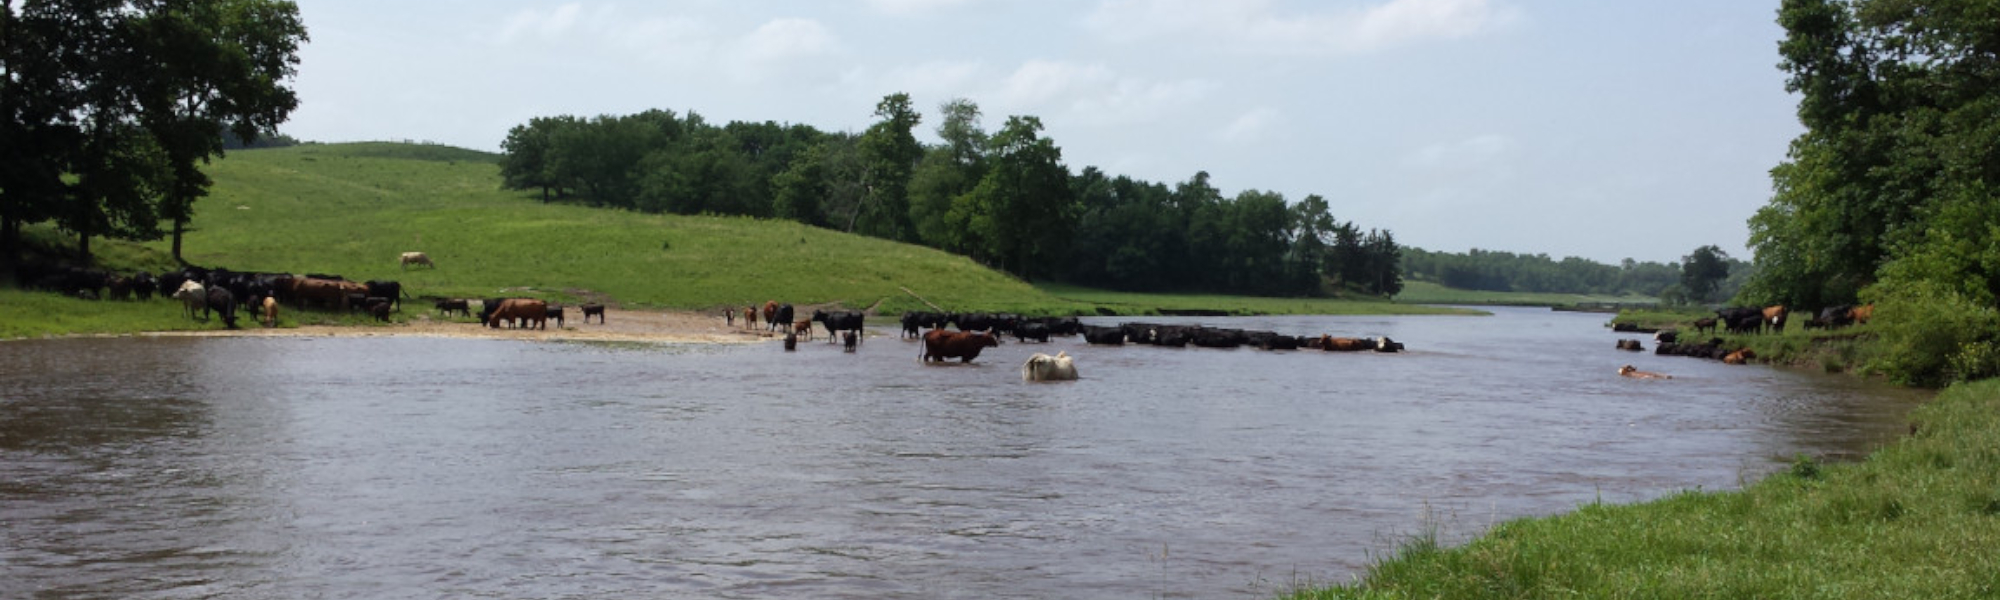 Stickle Farms River